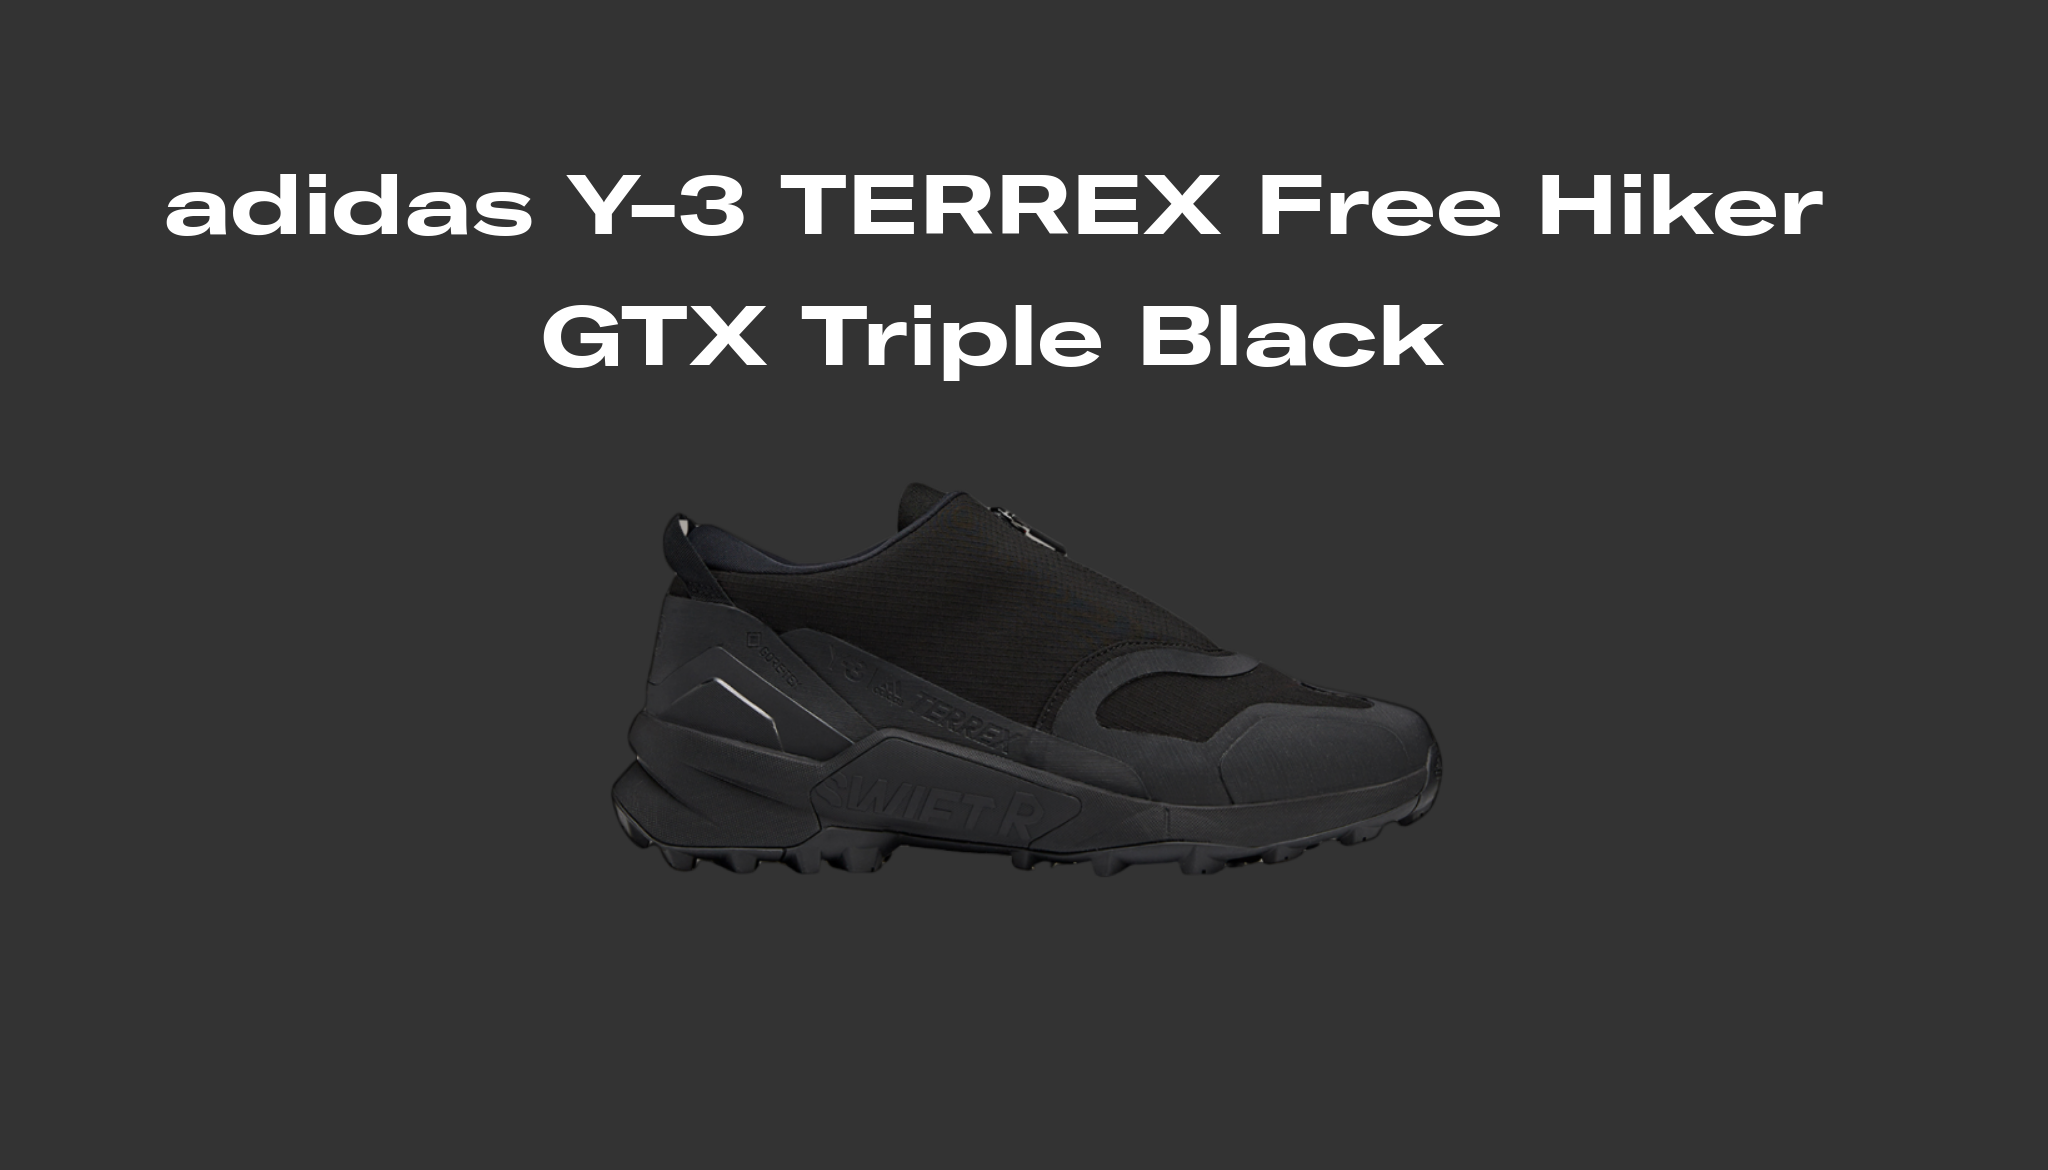 adidas adidas terrex y3 Y-3 TERREX Free Hiker GTX Triple Black, Raffles and Release